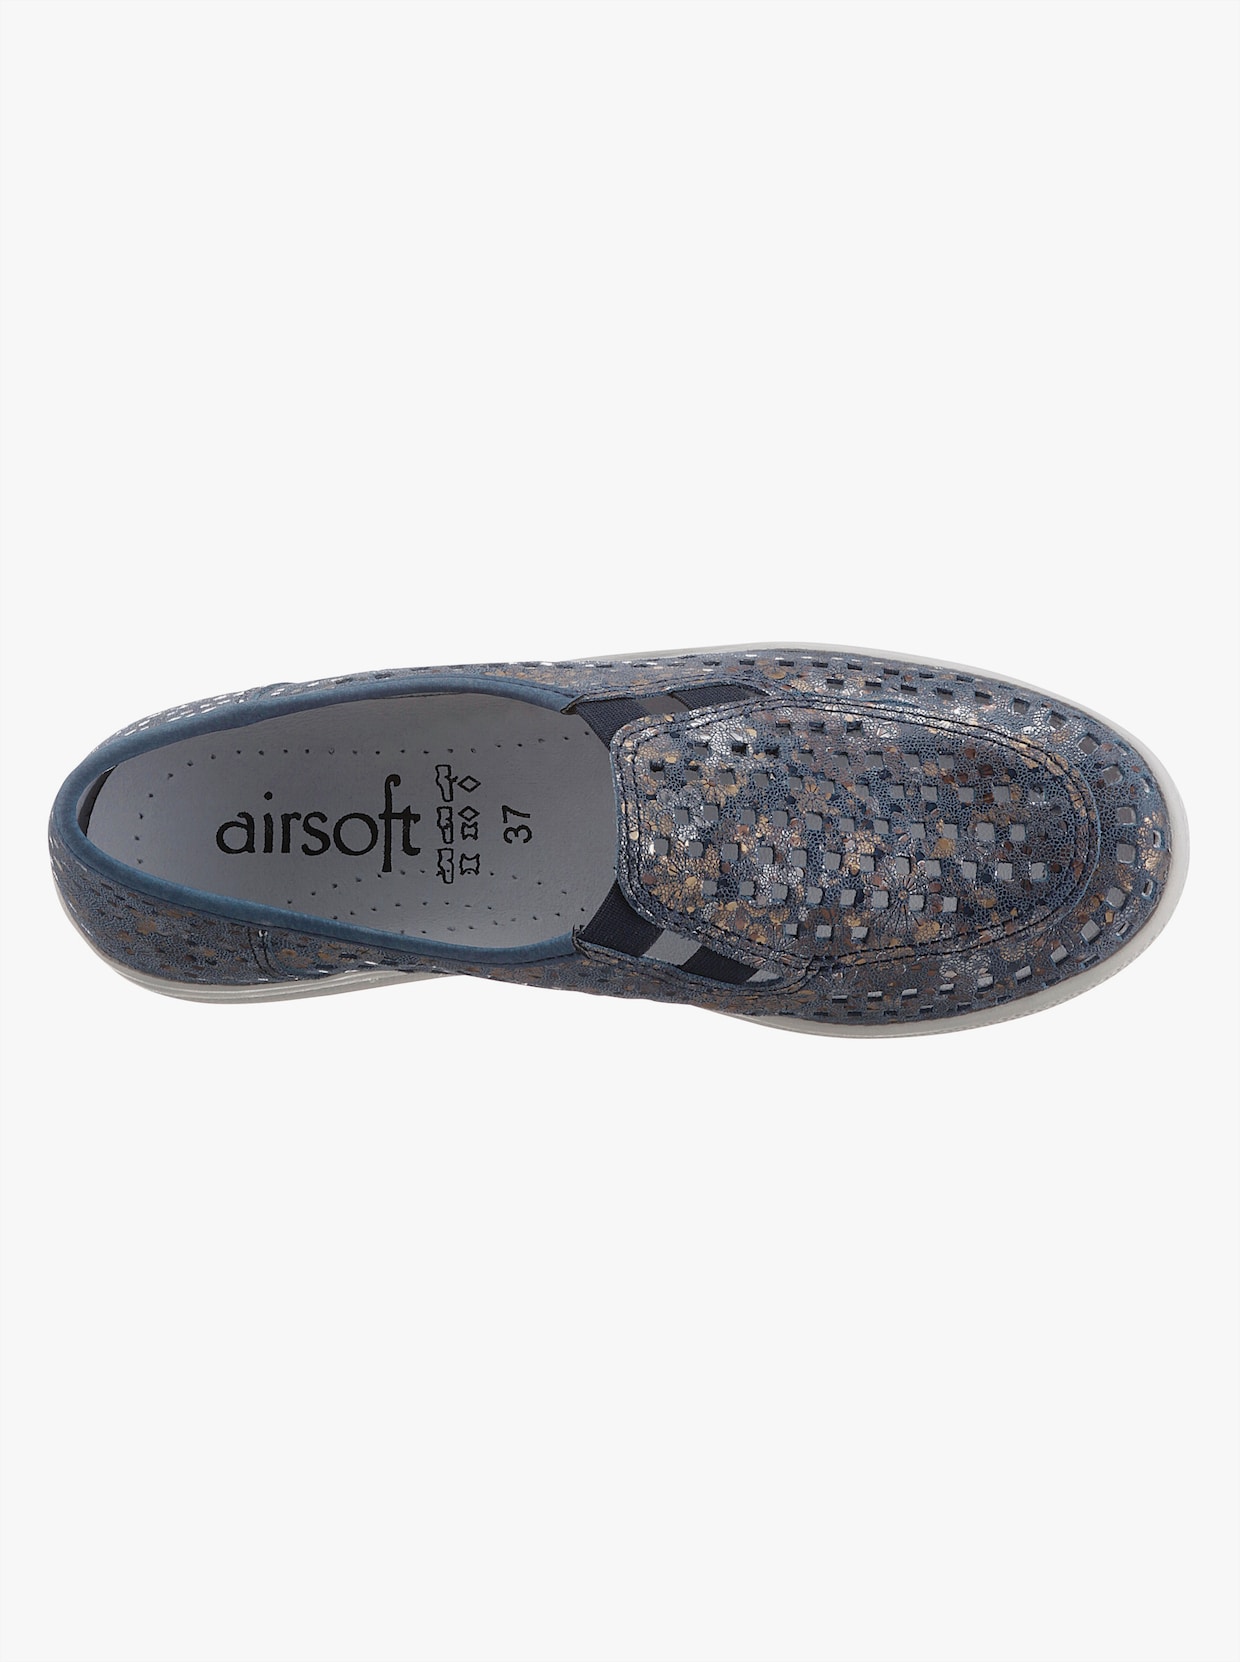 airsoft comfort+ Slipry - námořnická-květovaná